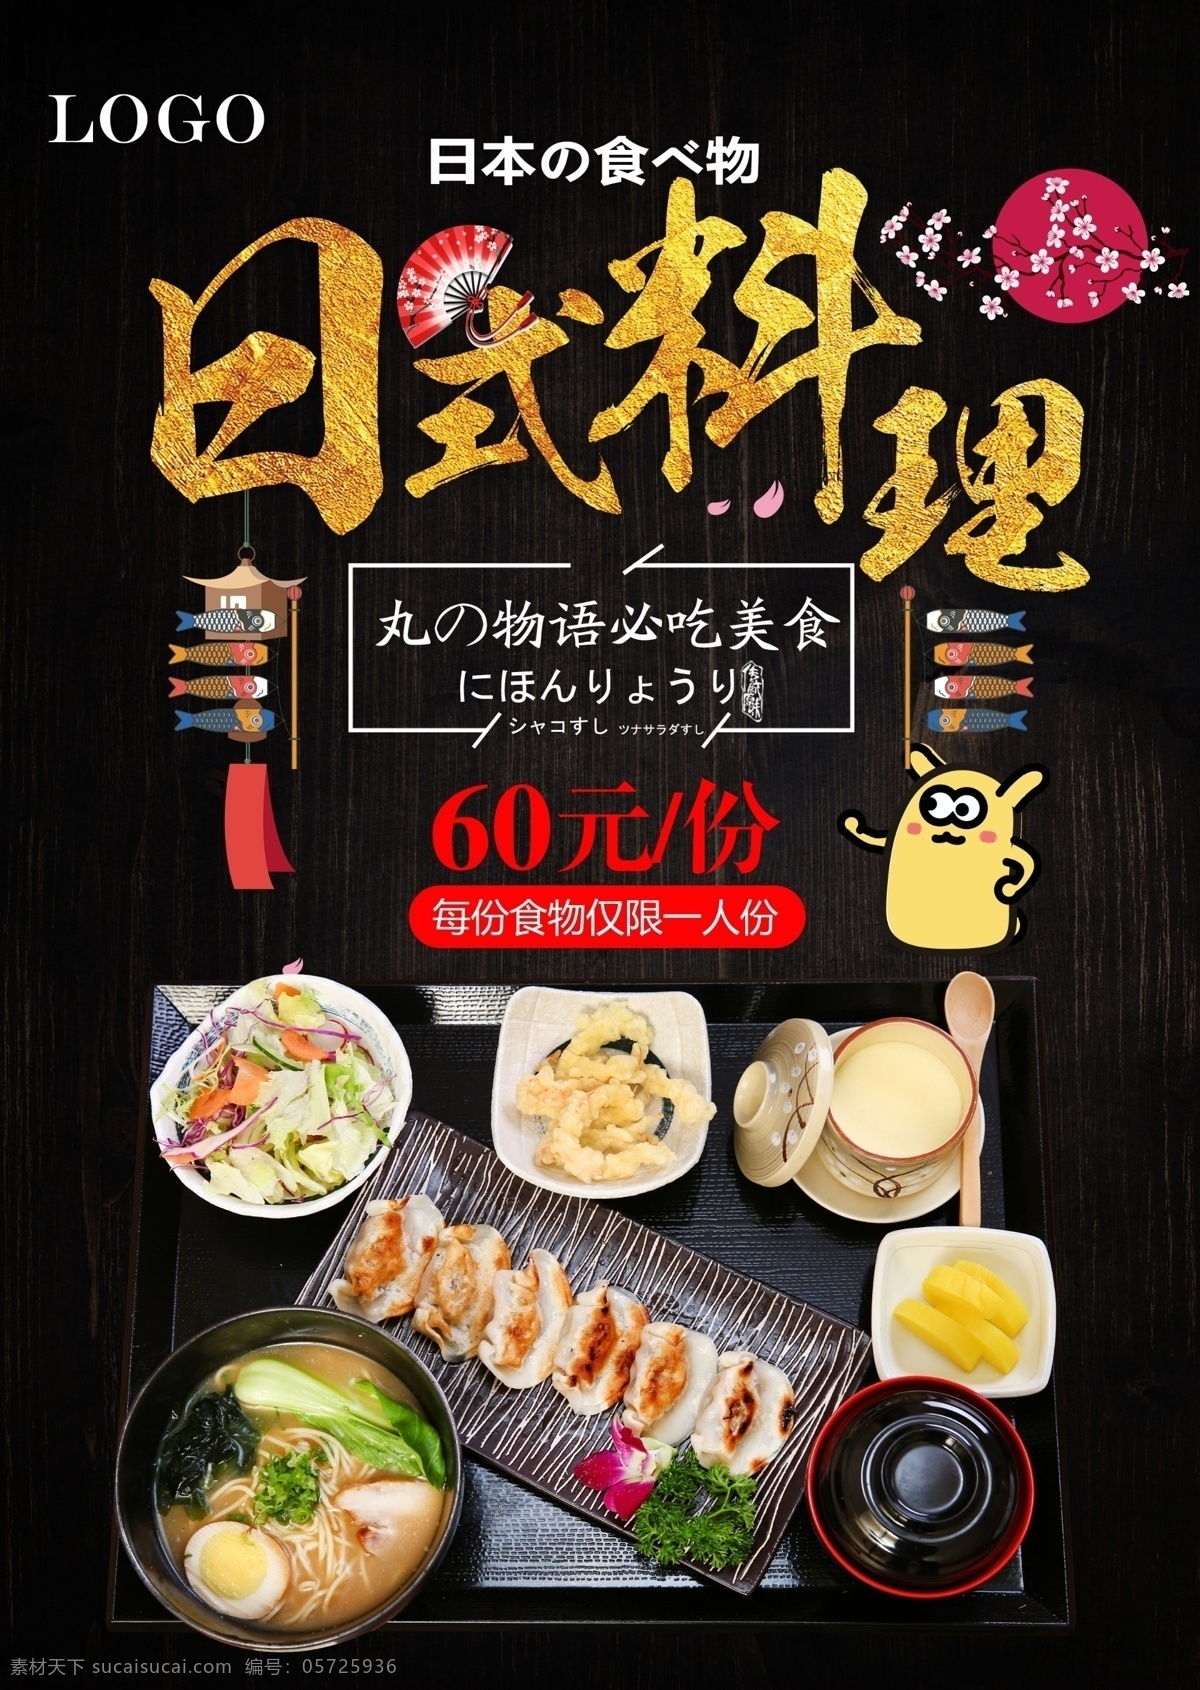 日料海报 日料 日式 餐厅 三文鱼 海鲜 套餐 活动 寿司 宣传 单页 海报